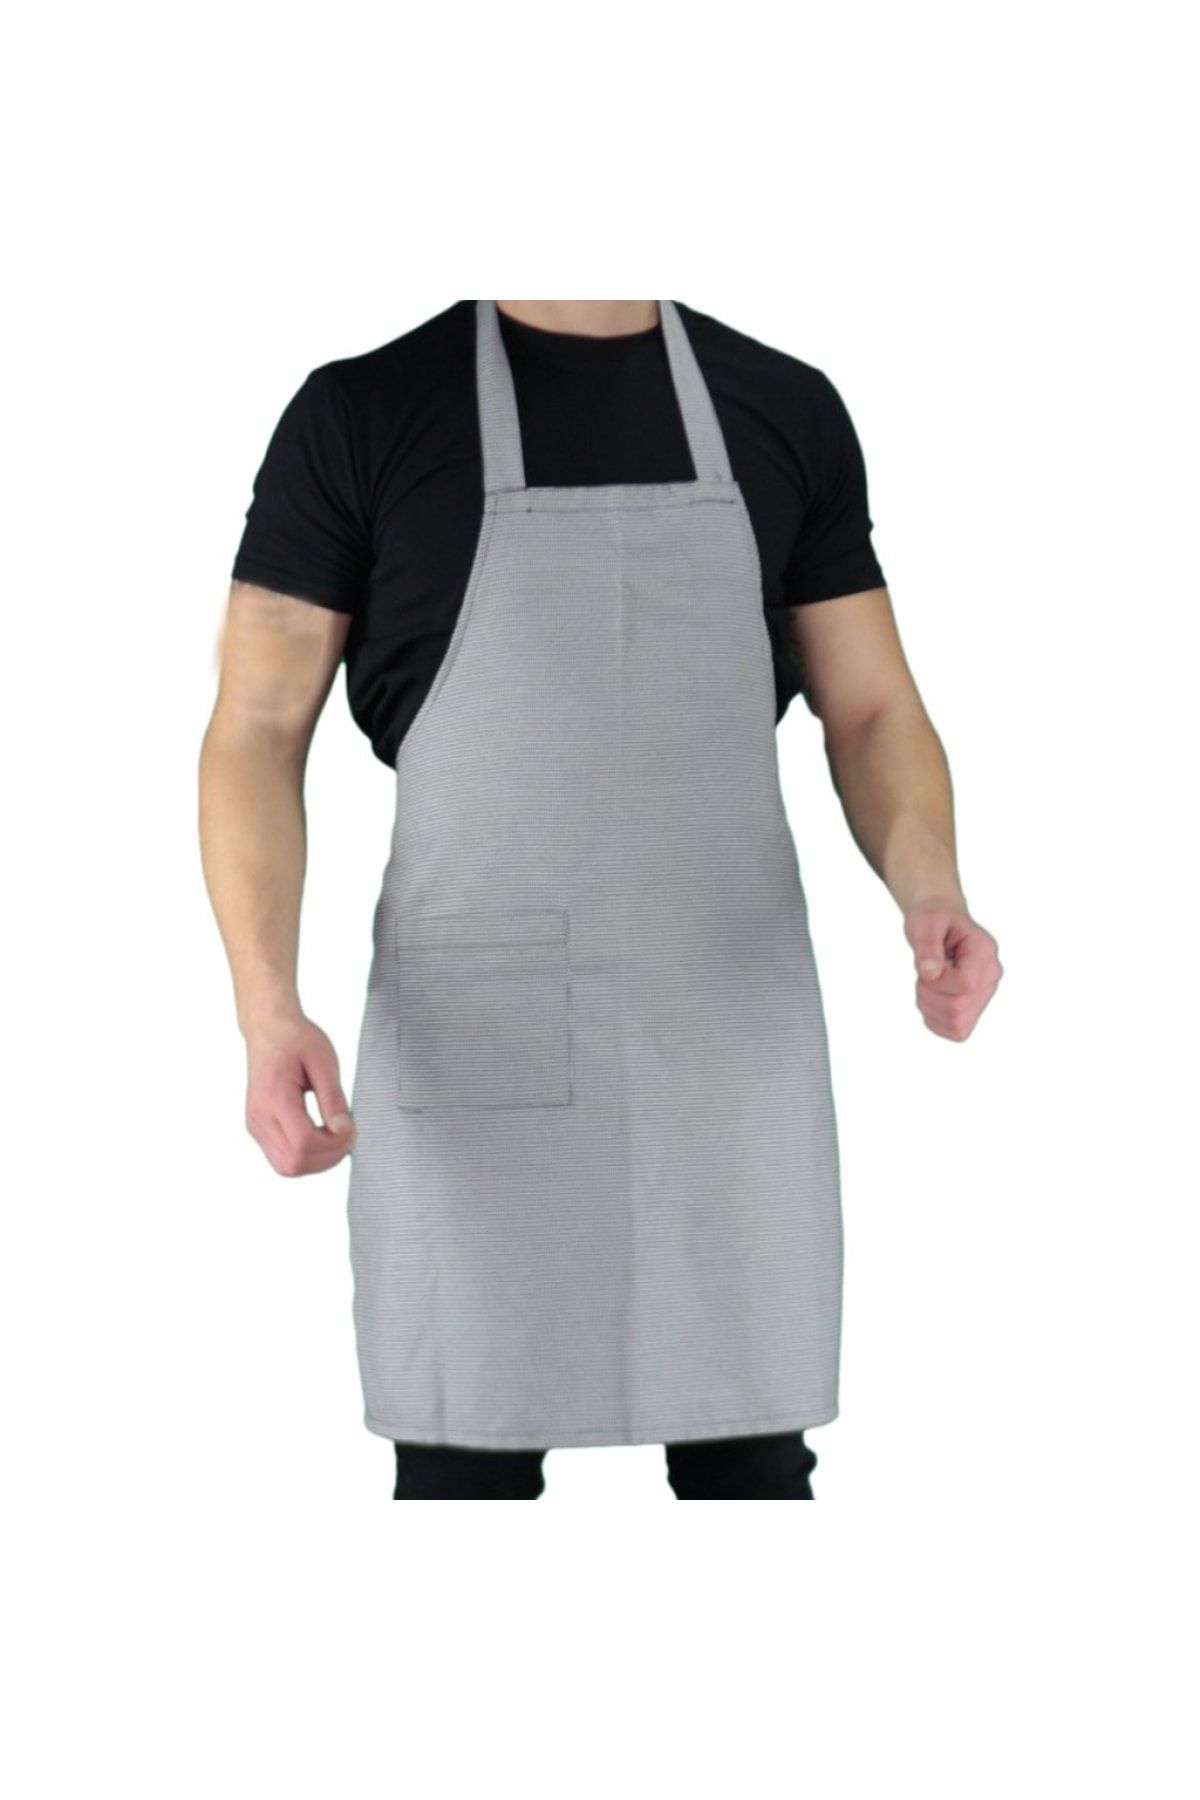 efetex Mutfak Aşçı Bulaşıkçı Temizlikçi Garson Şef Komi Boyundan Askılı Iş Önlük